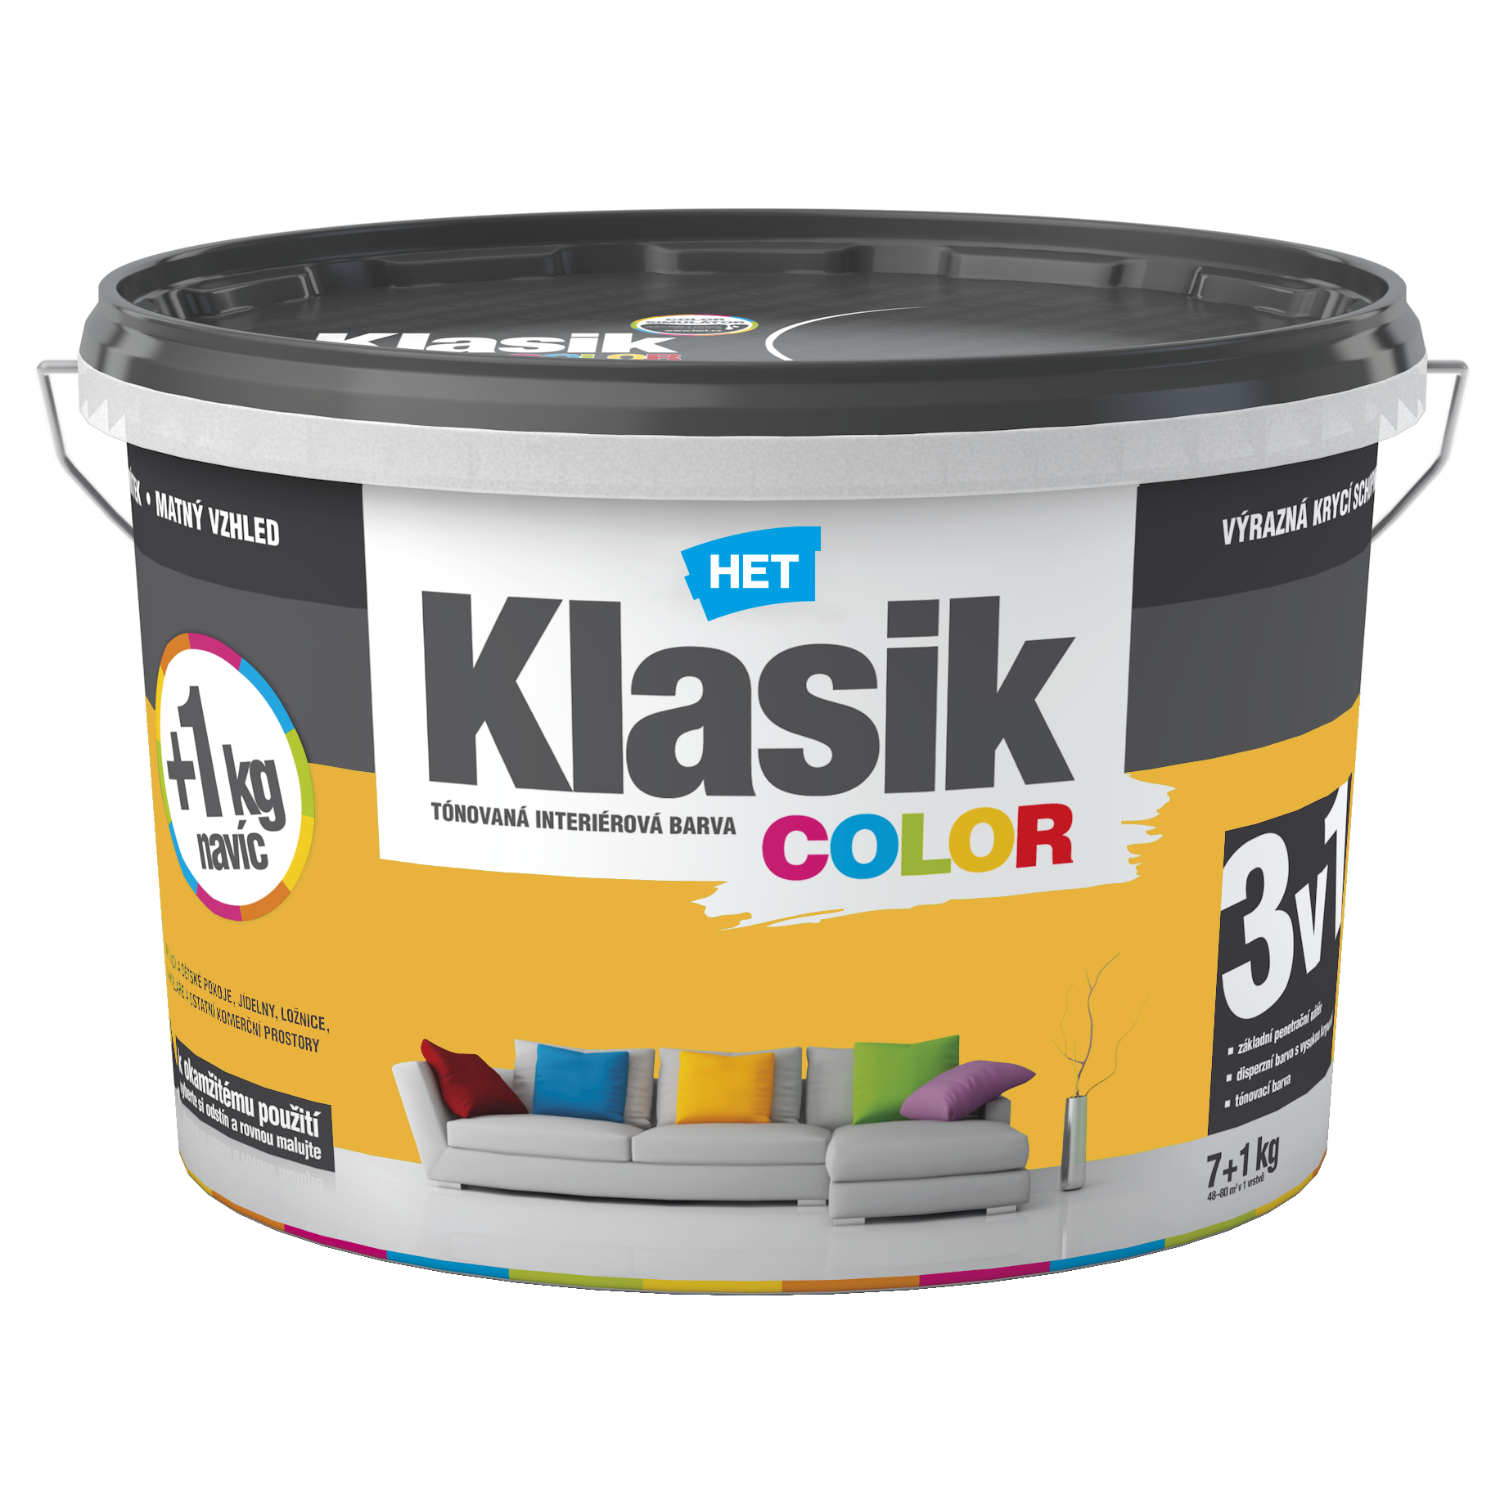 HET Klasik COLOR tónovaná interiérová akrylátová disperzná oteruvzdorná farba 7 kg + 1 kg zdarma, KC0618 - žltý citrónový